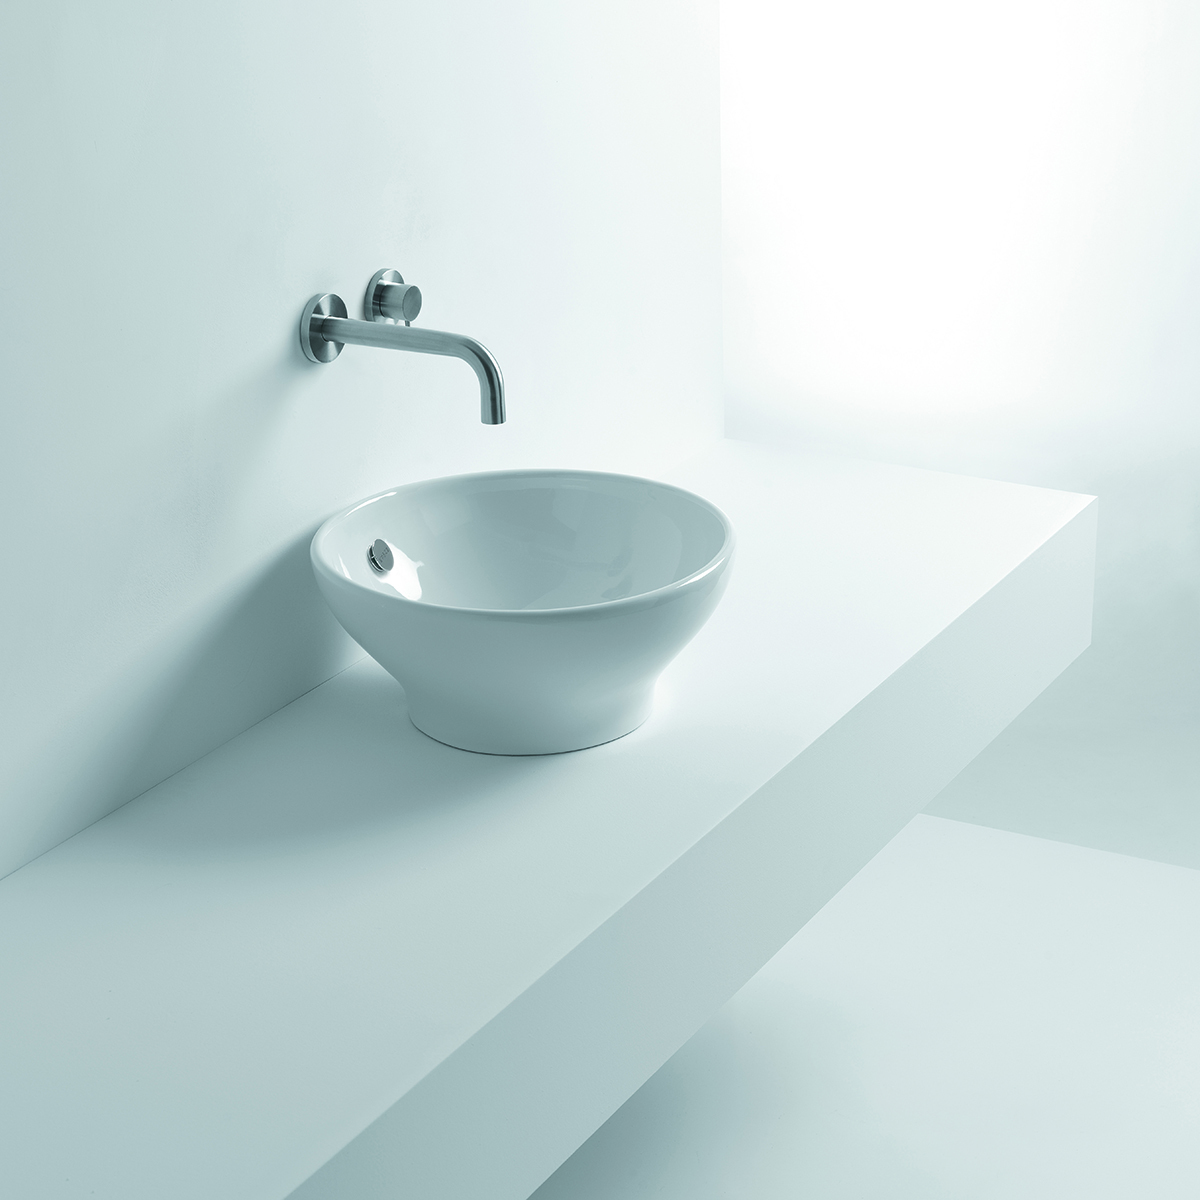 Cup WS02101V, 16.5 Dia. x 7.5, Bathroom Sink in Ceramic White